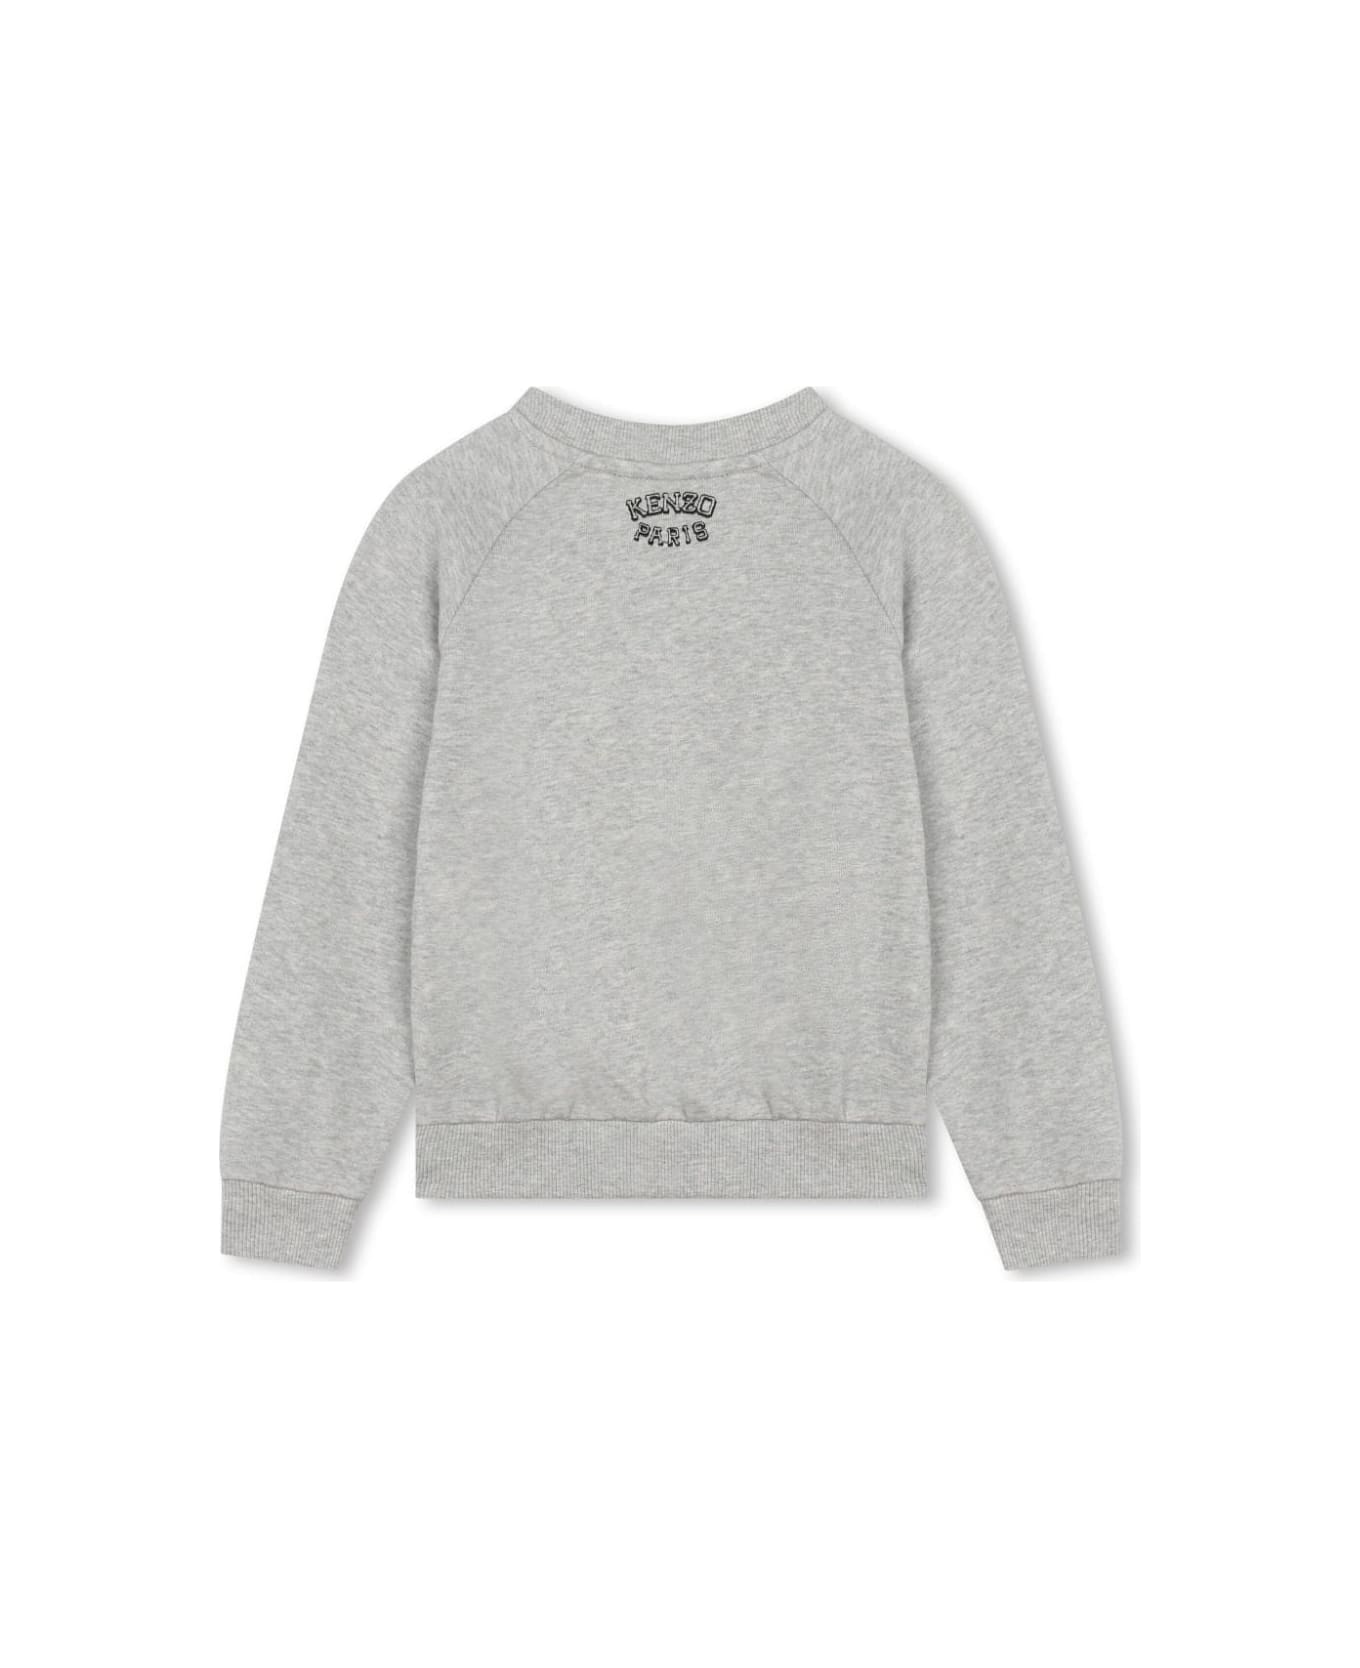 Kenzo Kids Sweatshirt - Grey